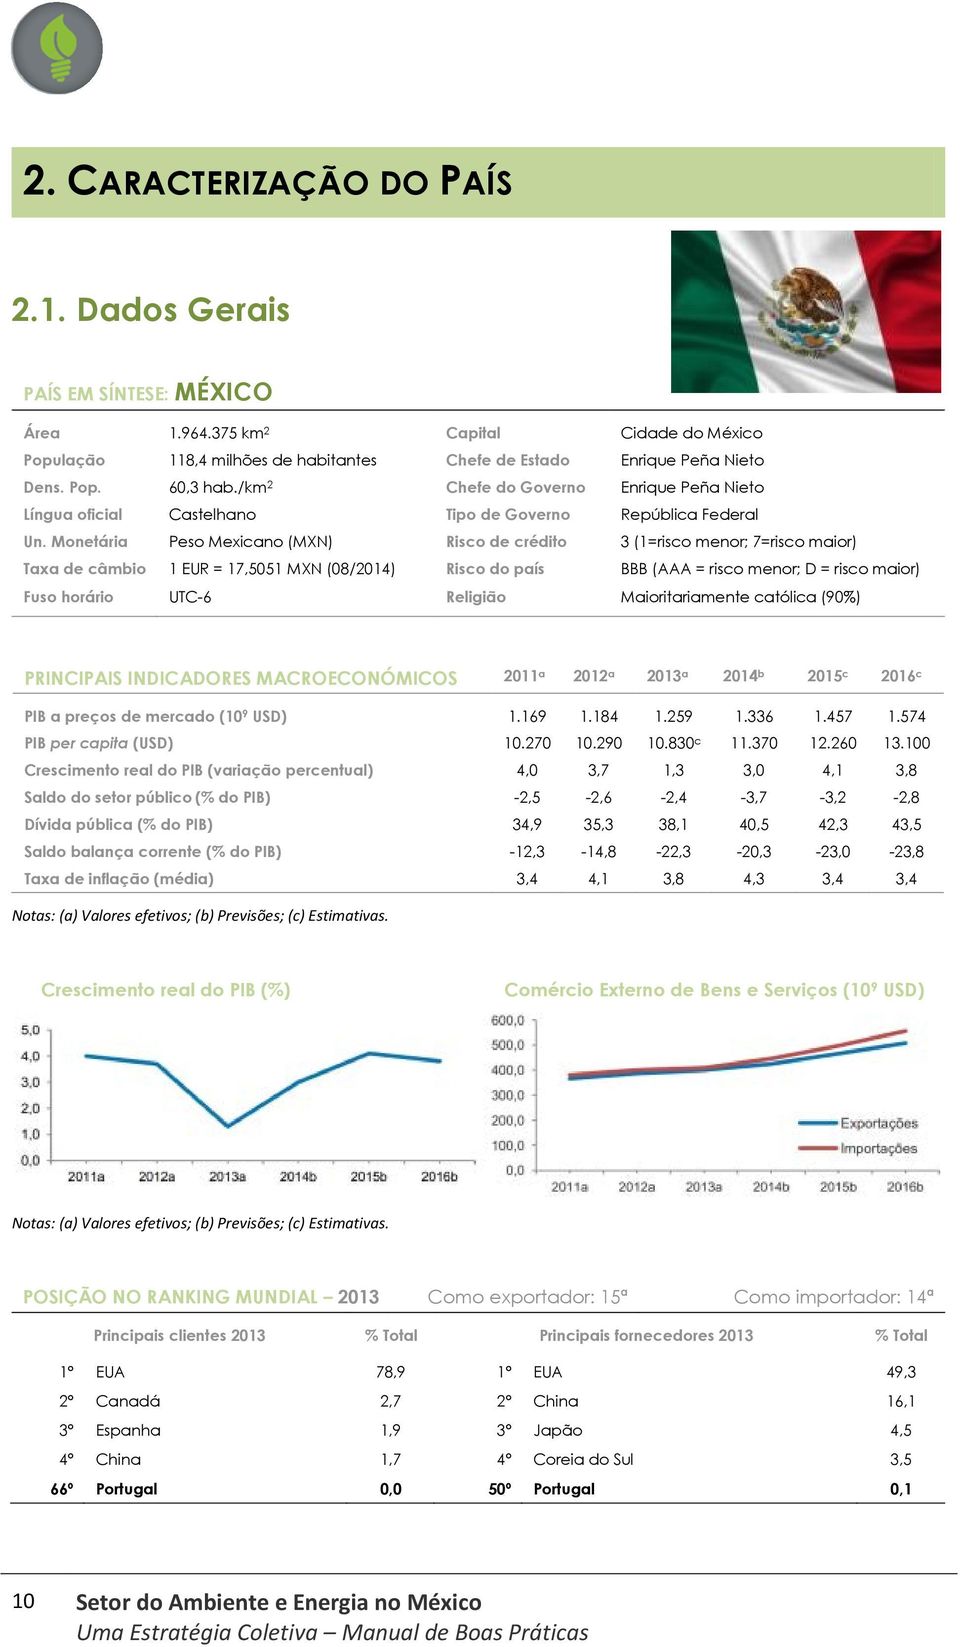 Monetária Peso Mexicano (MXN) Risco de crédito 3 (1=risco menor; 7=risco maior) Taxa de câmbio 1 EUR = 17,5051 MXN (08/2014) Risco do país BBB (AAA = risco menor; D = risco maior) Fuso horário UTC-6